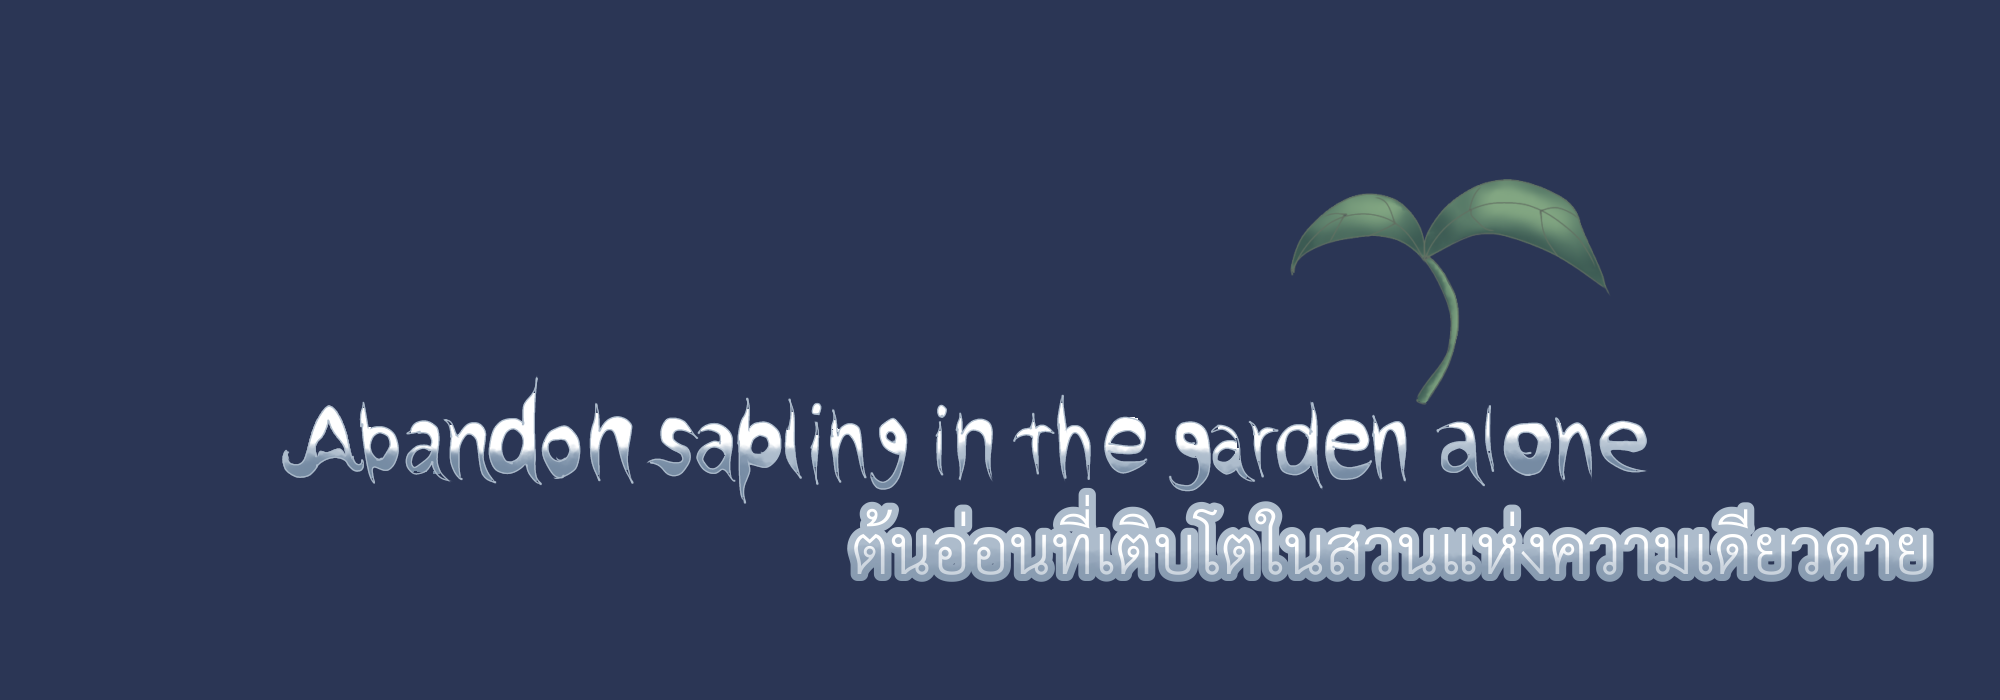 Abandon sapling in the garden alone